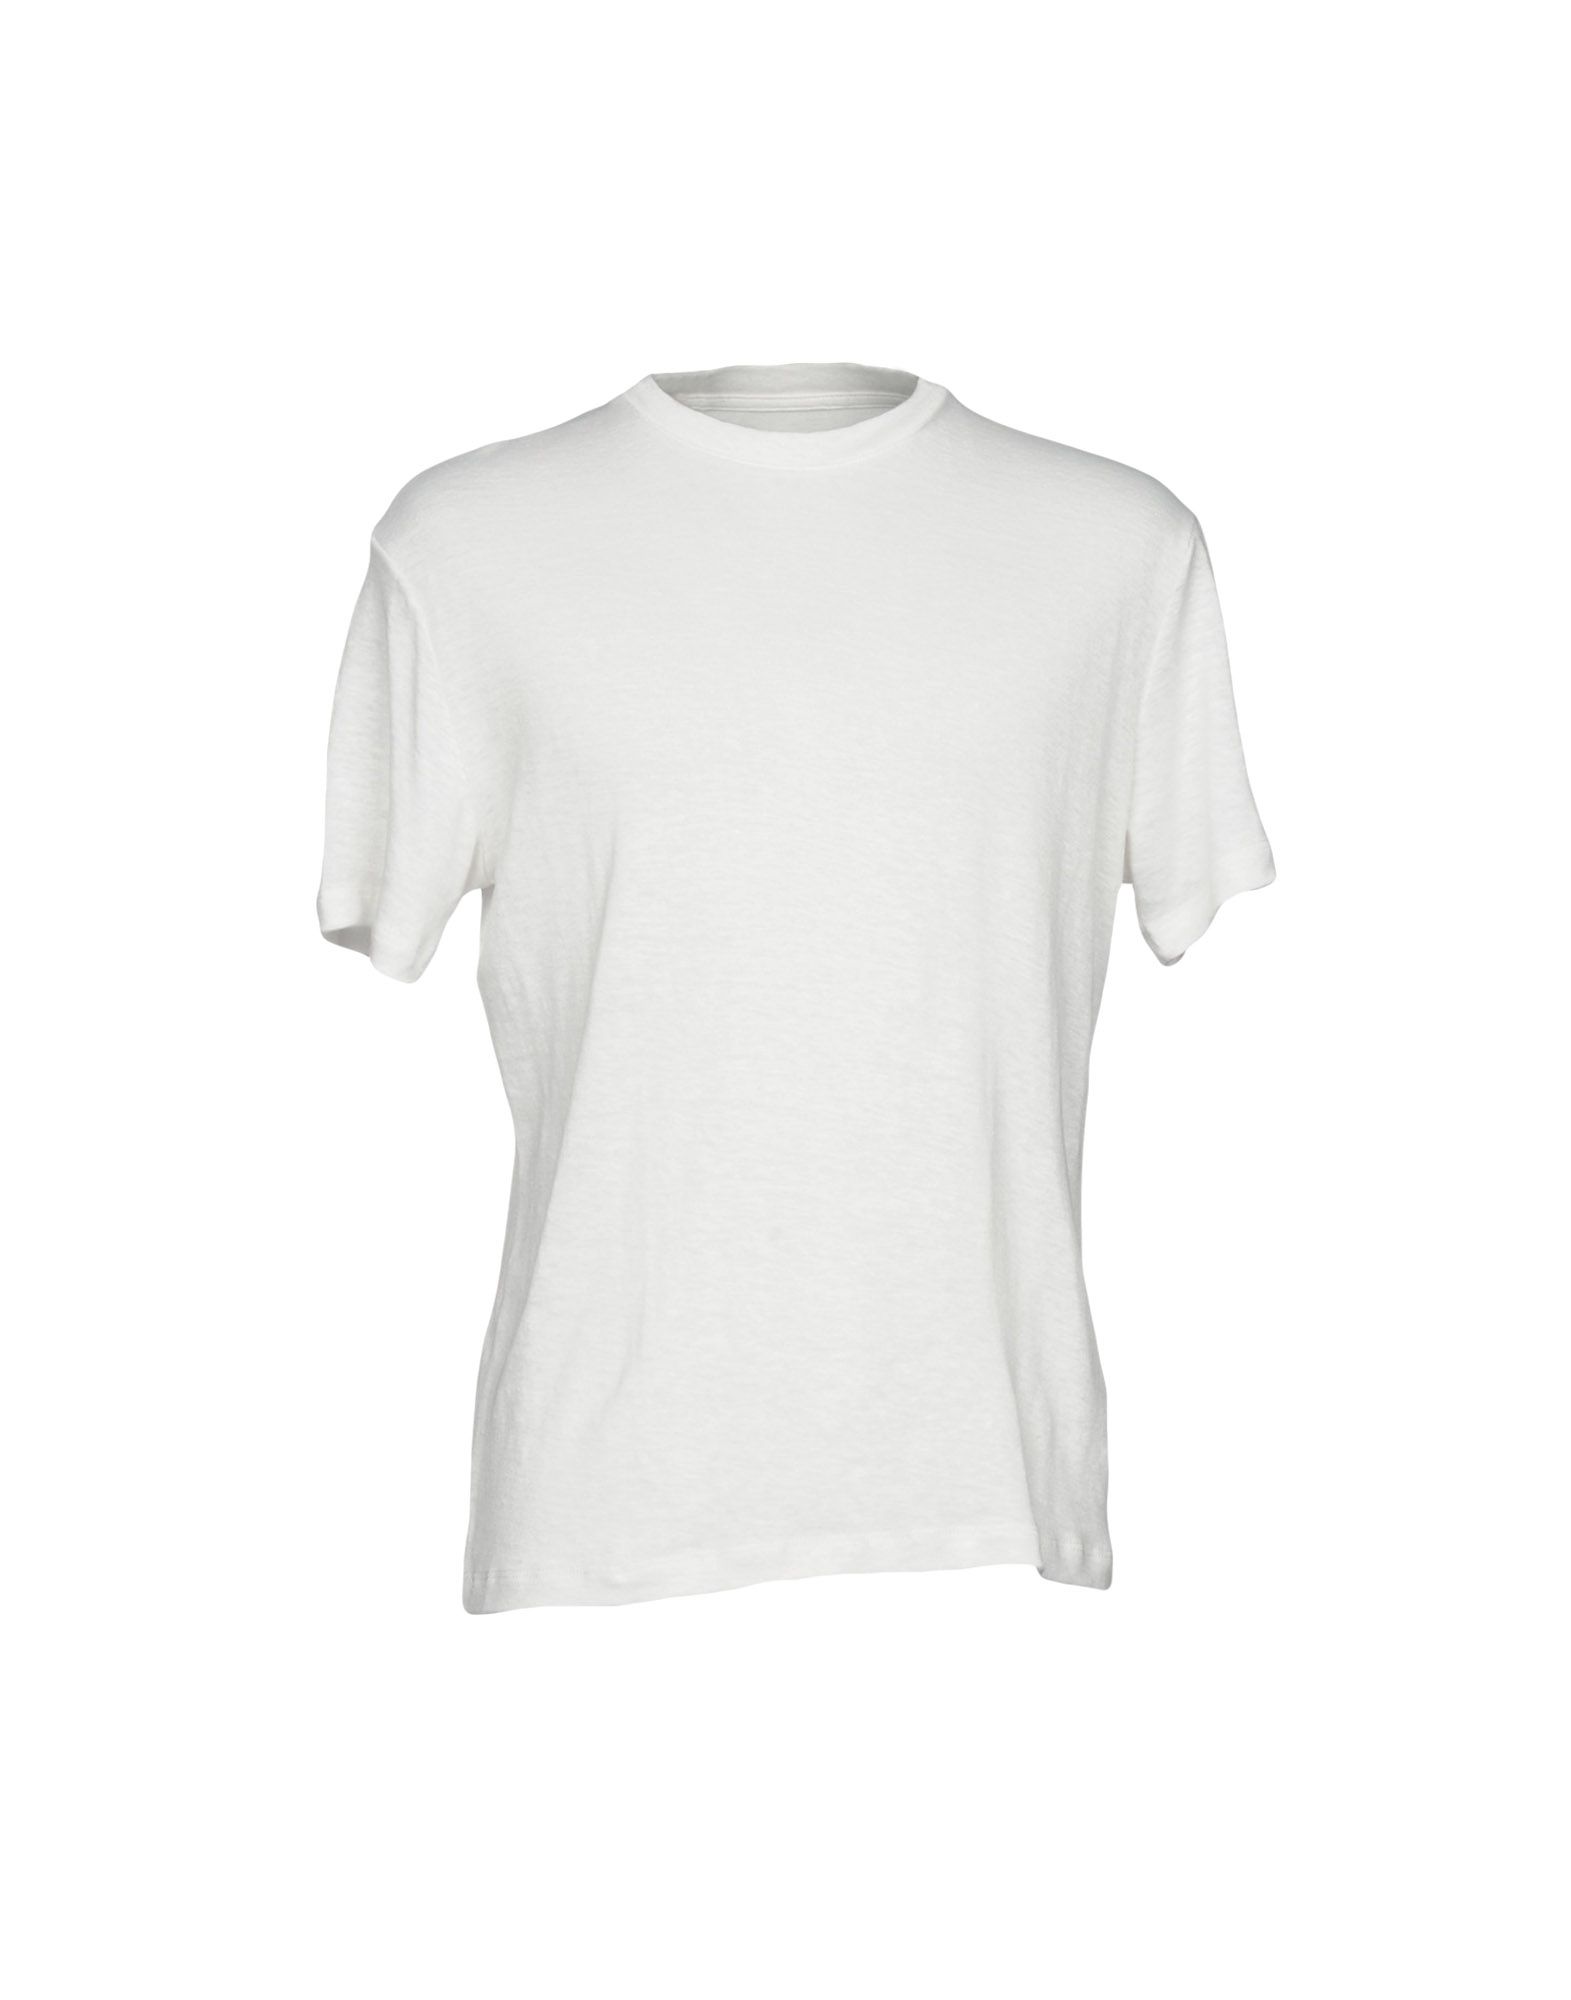 FANMAIL T-shirt,12136143KD 4